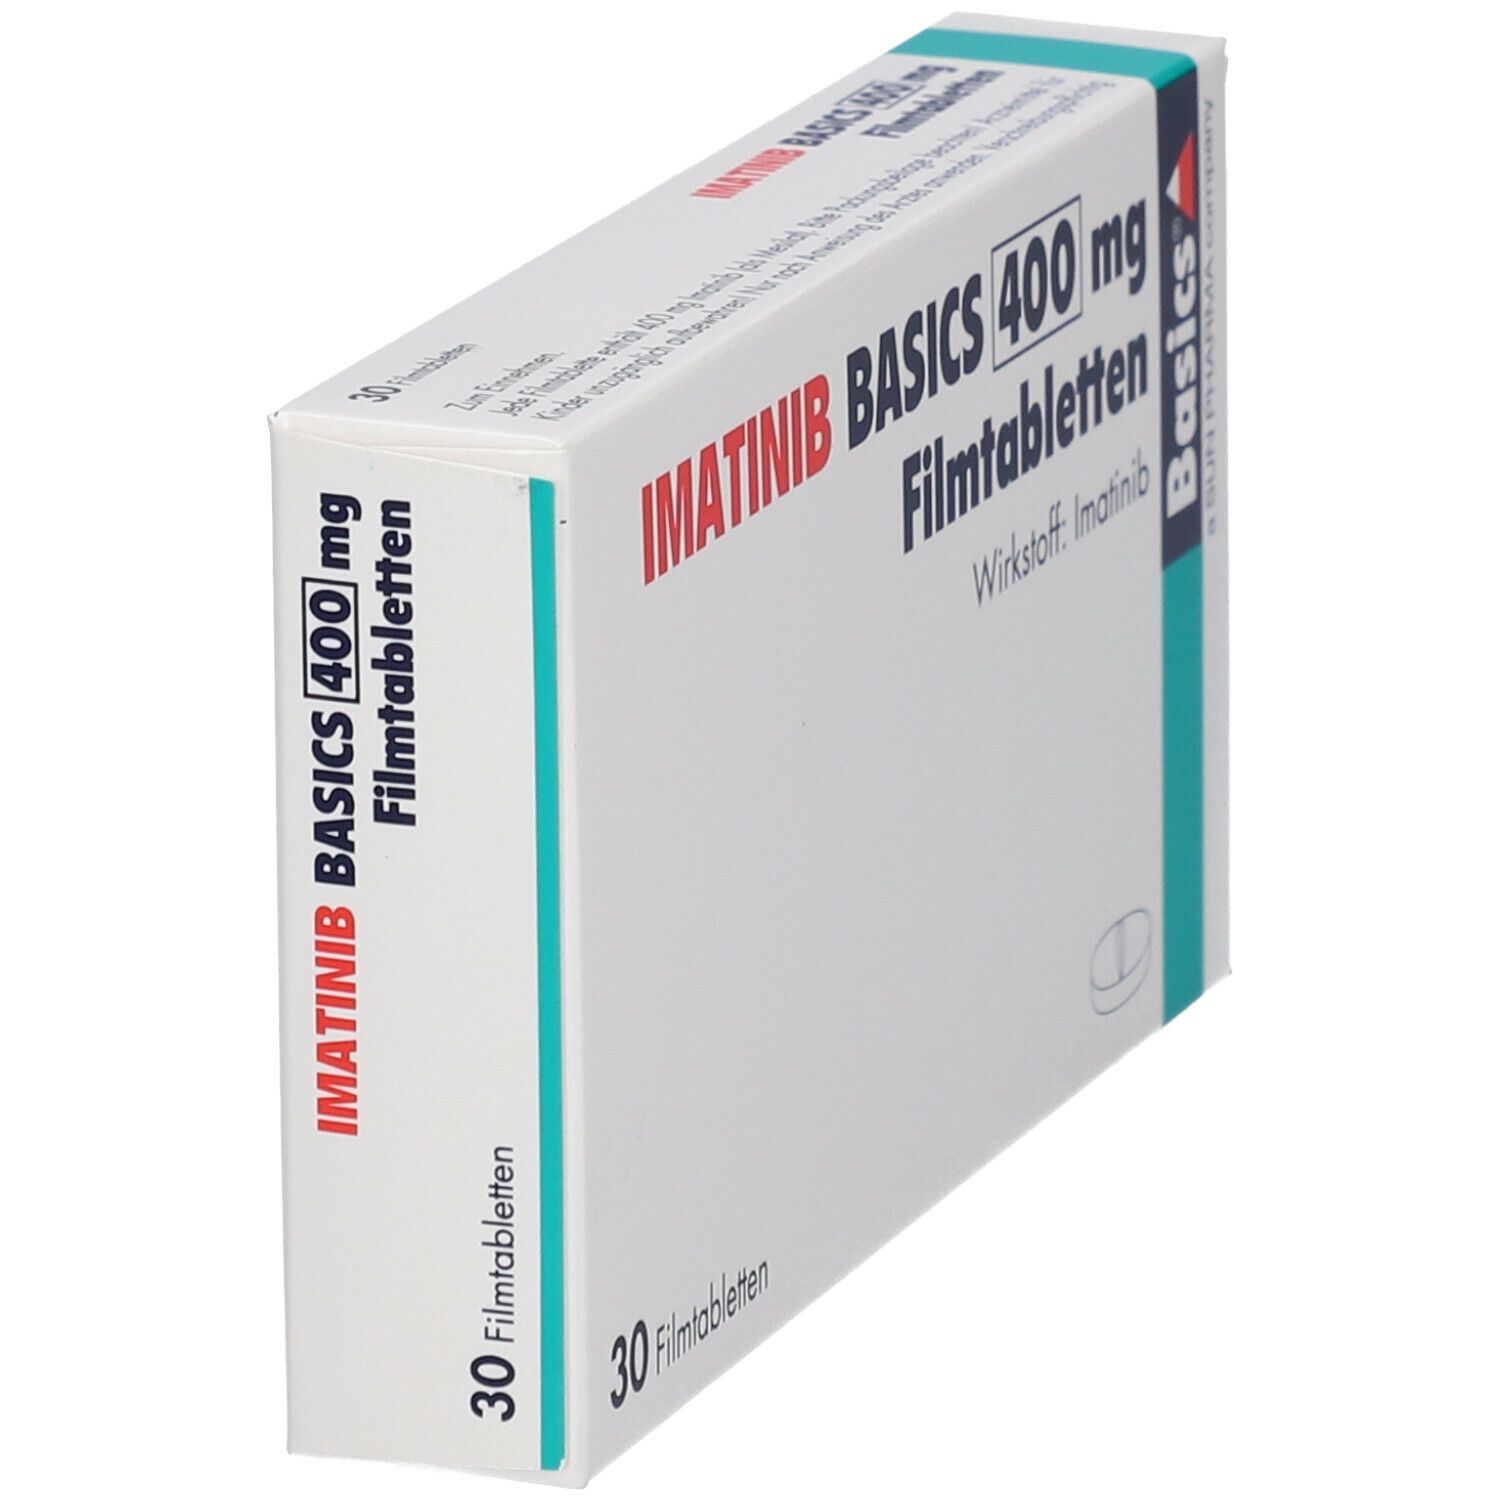 IMATINIB BASICS 400 mg